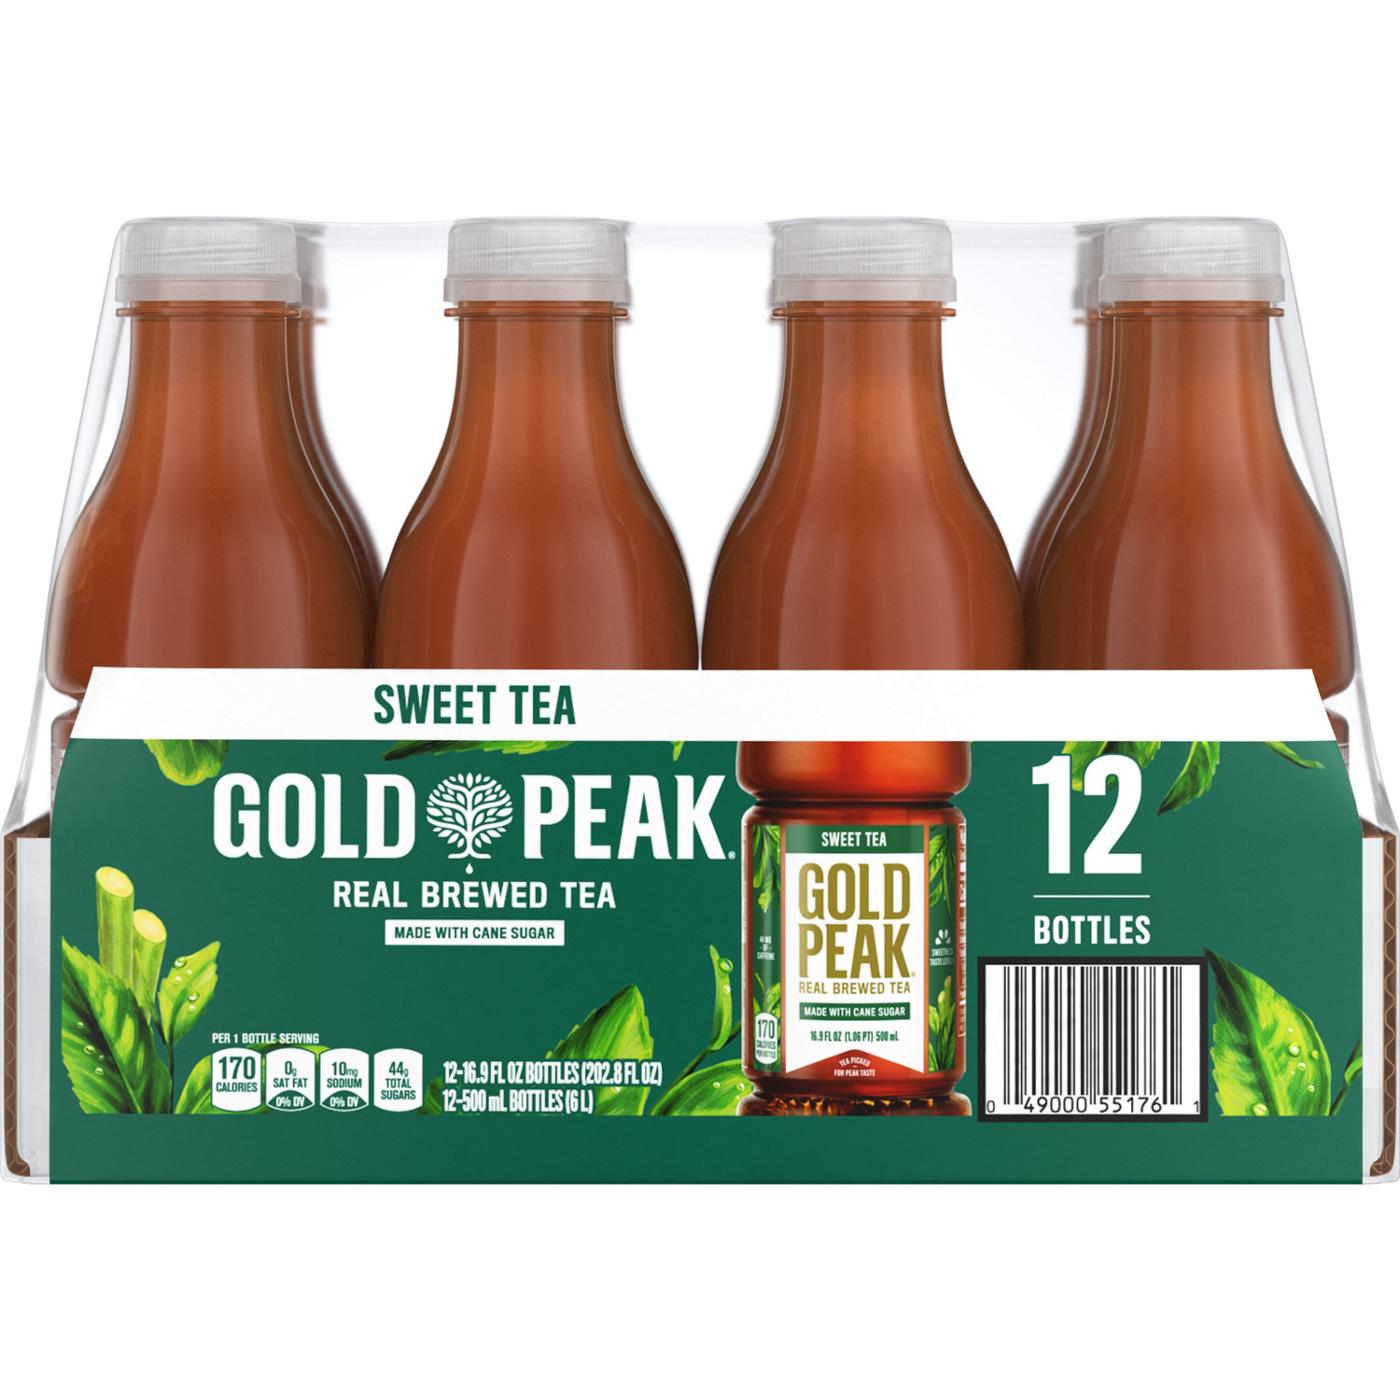 Gold Peak Sweet Tea 12 pk Bottles; image 2 of 4